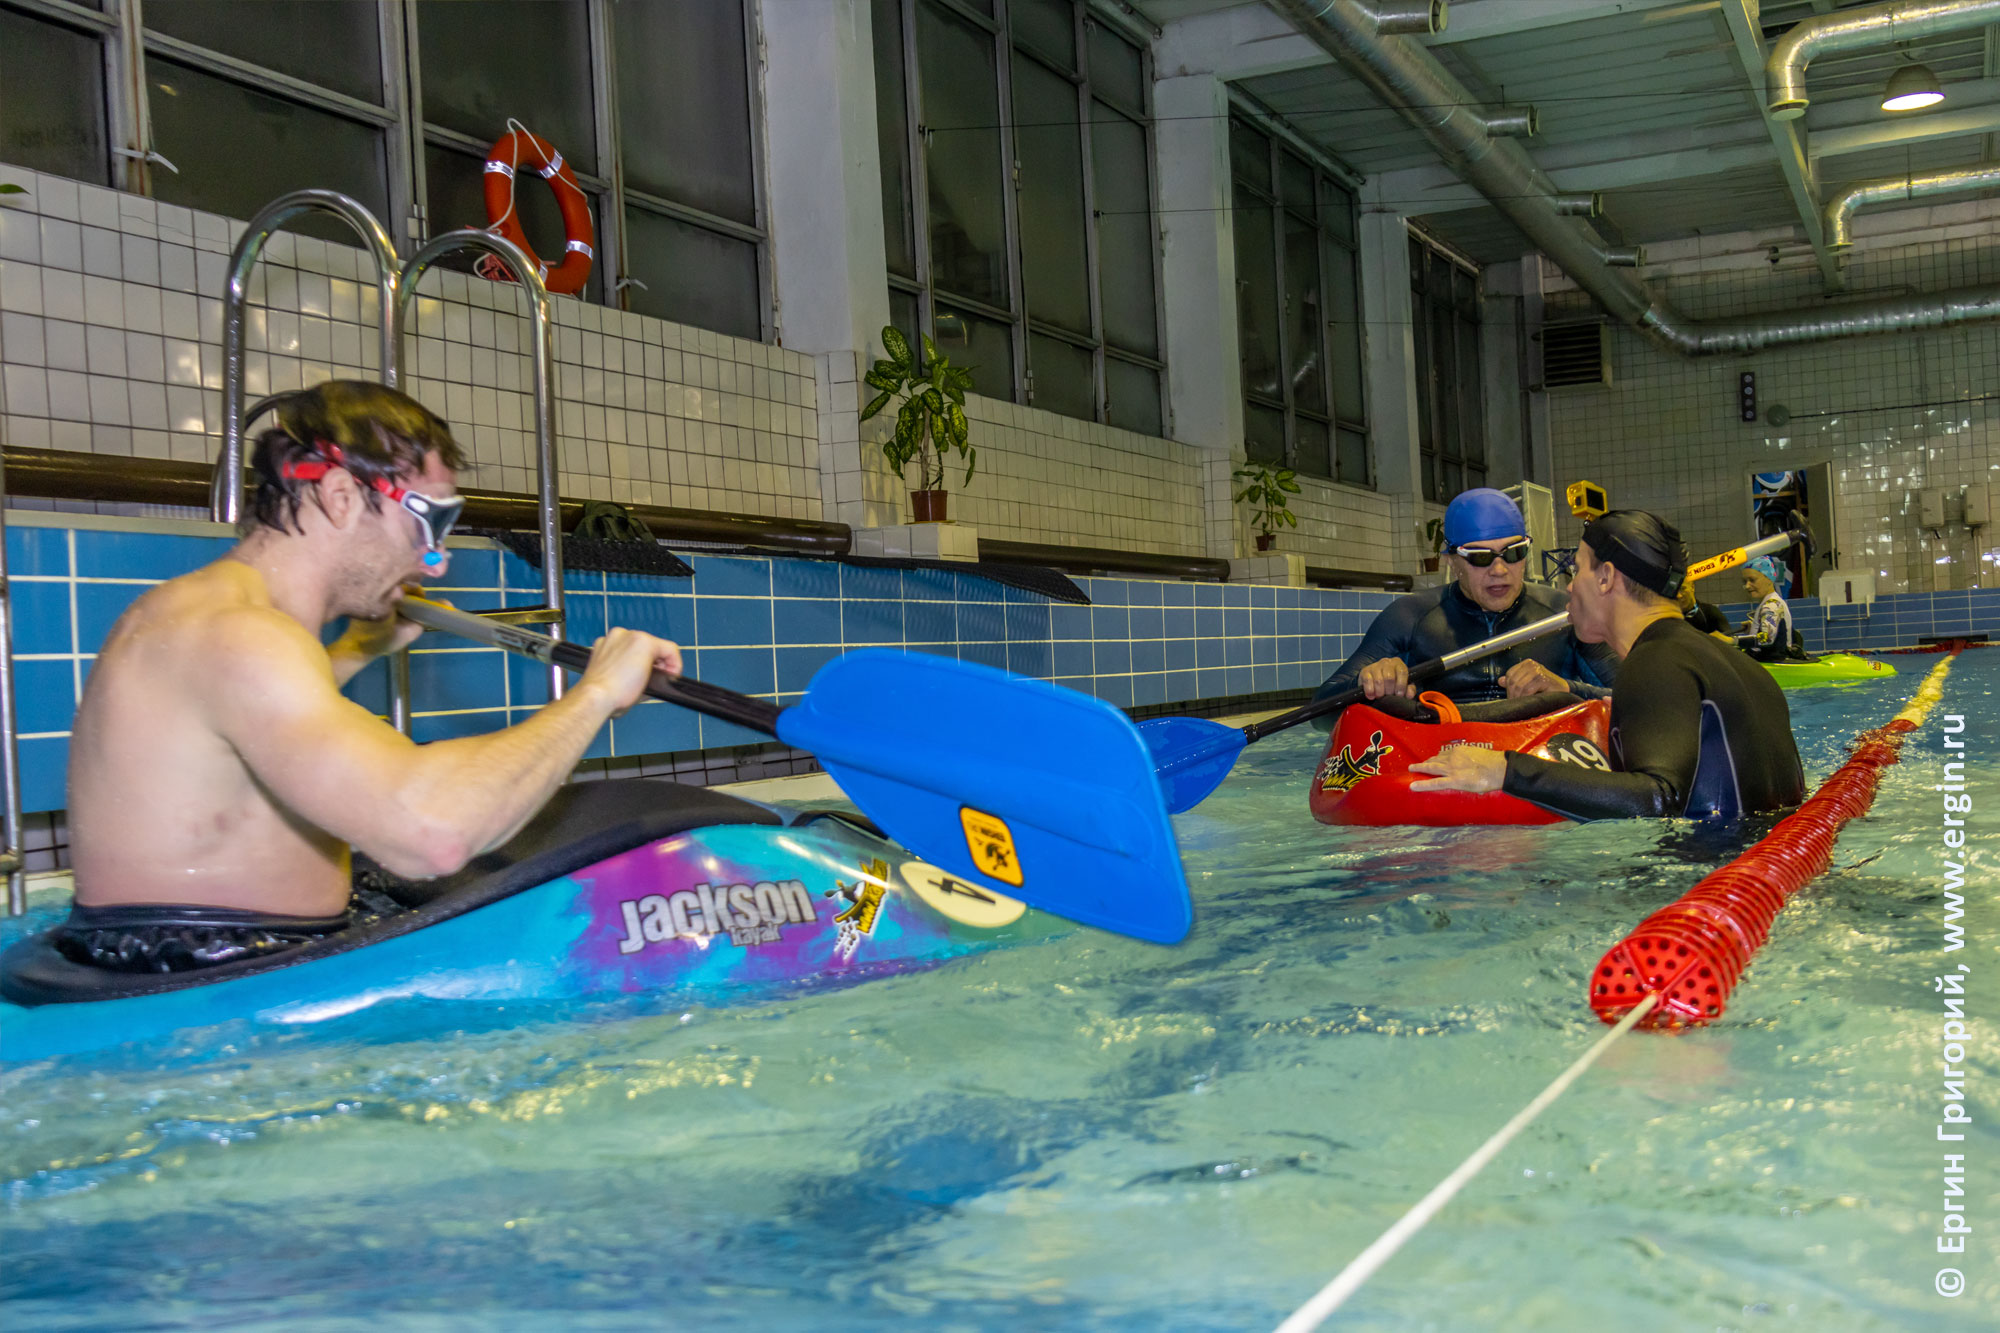 Сплит-тренировка по эскимосскому перевороту на каяке в бассейне